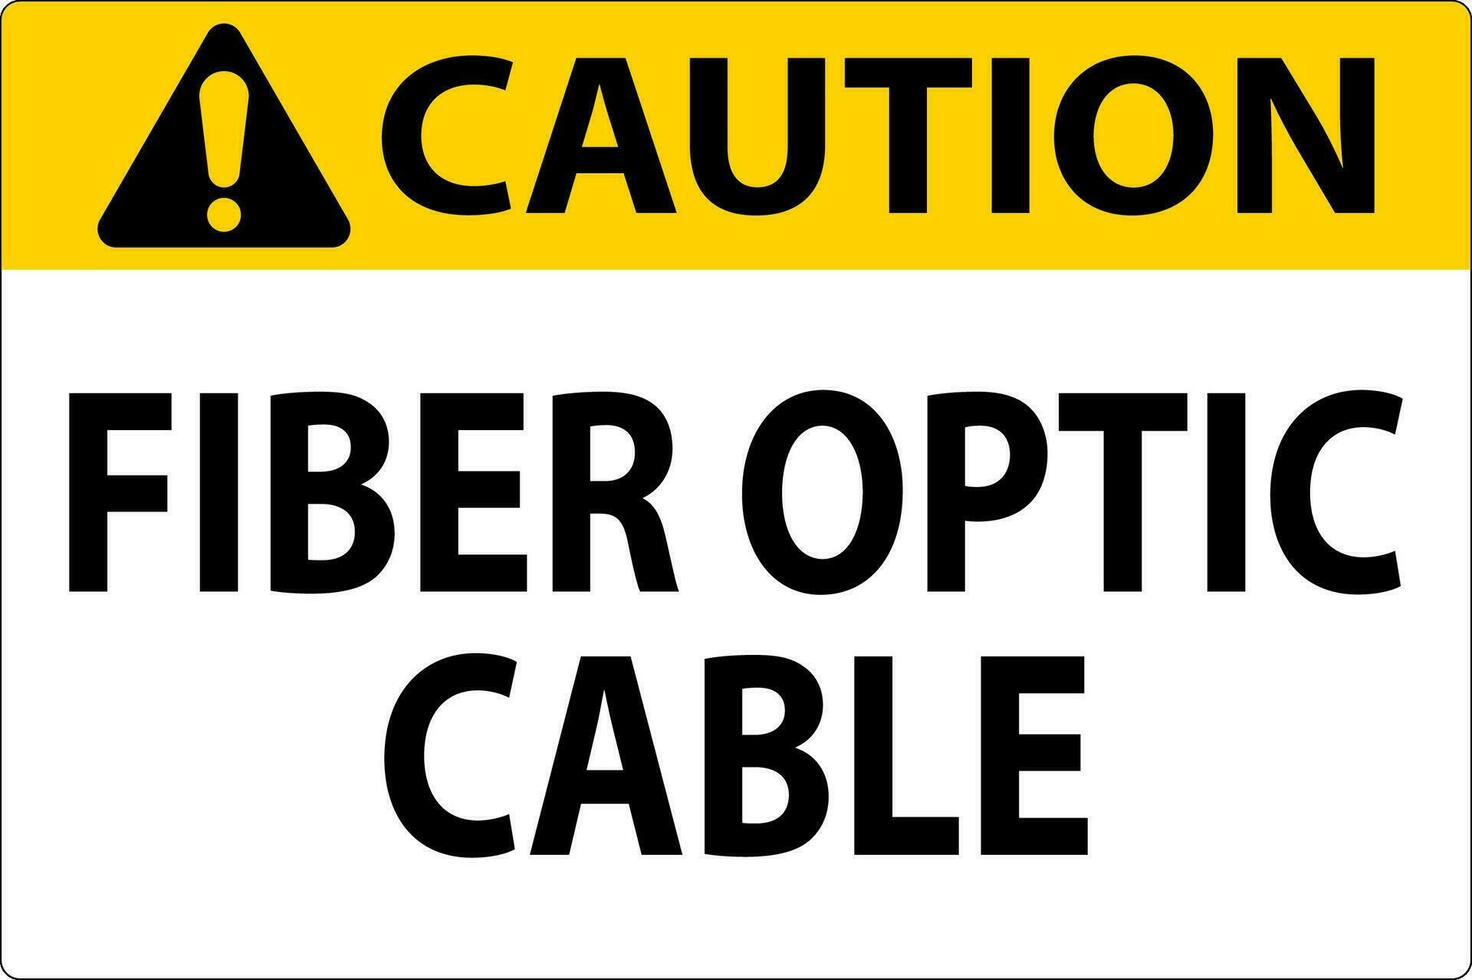 mise en garde signe, fibre optique câble signe vecteur